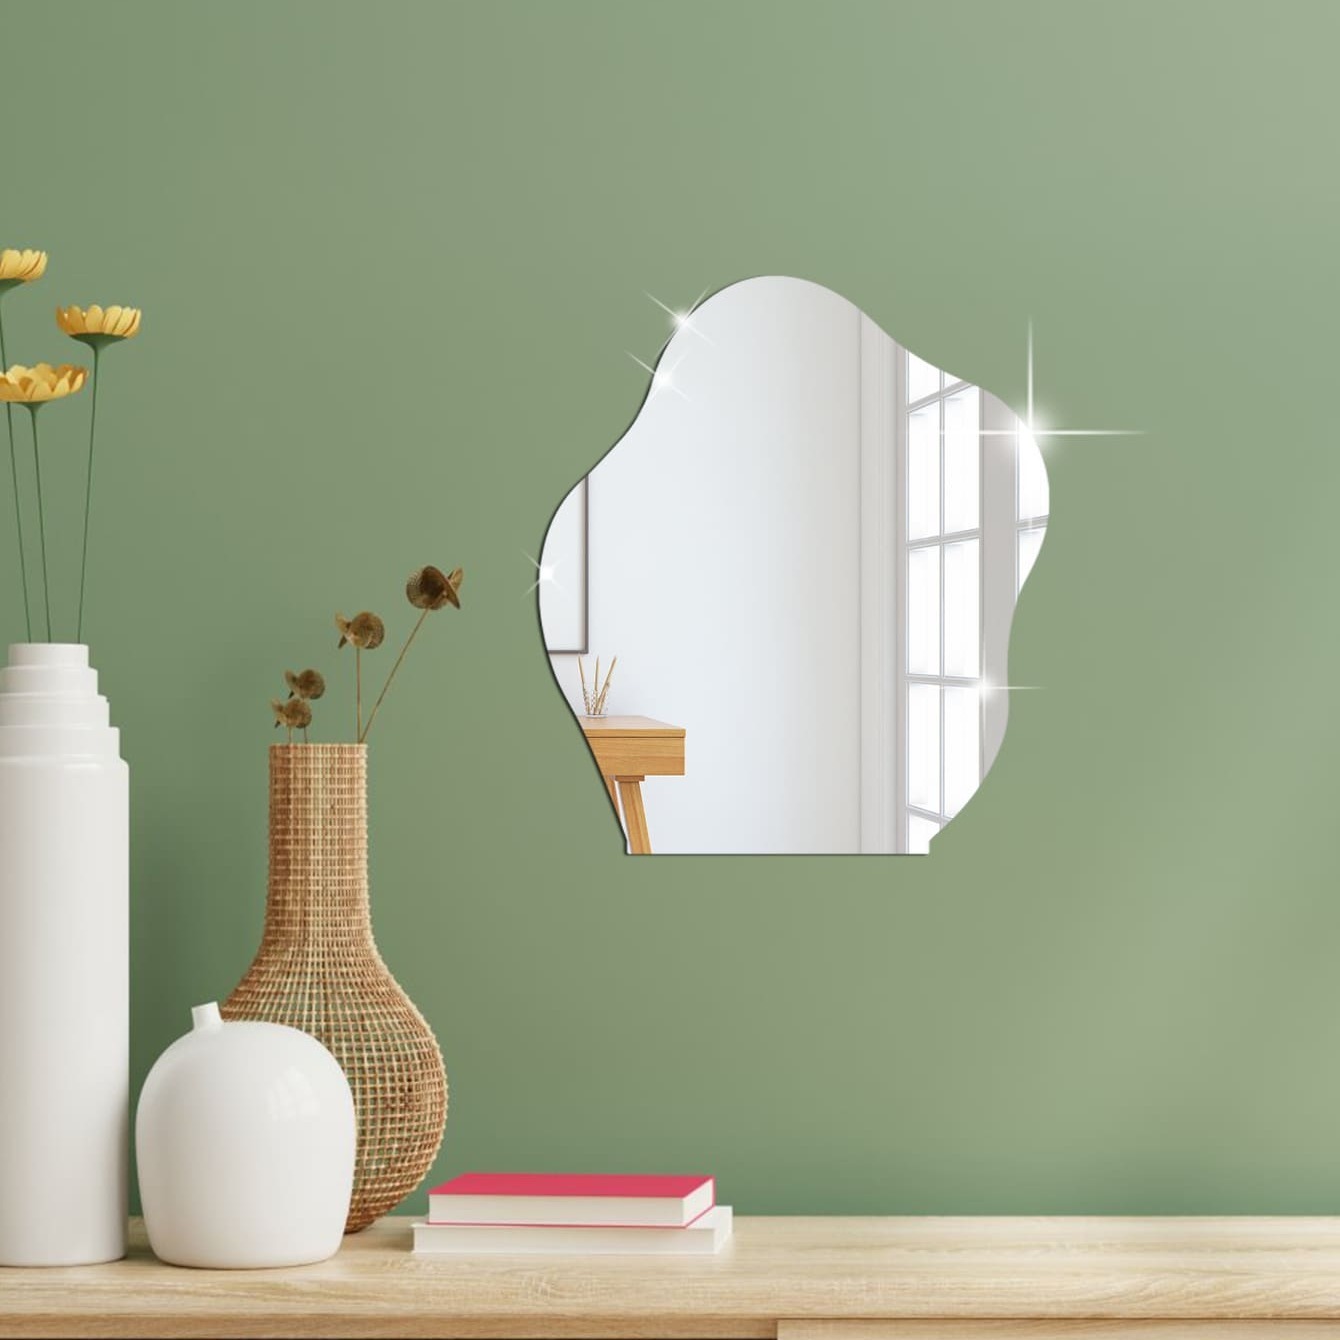 Mini Spiegel Fliesen Wandaufkleber Selbstklebend Aufkleben Kunst